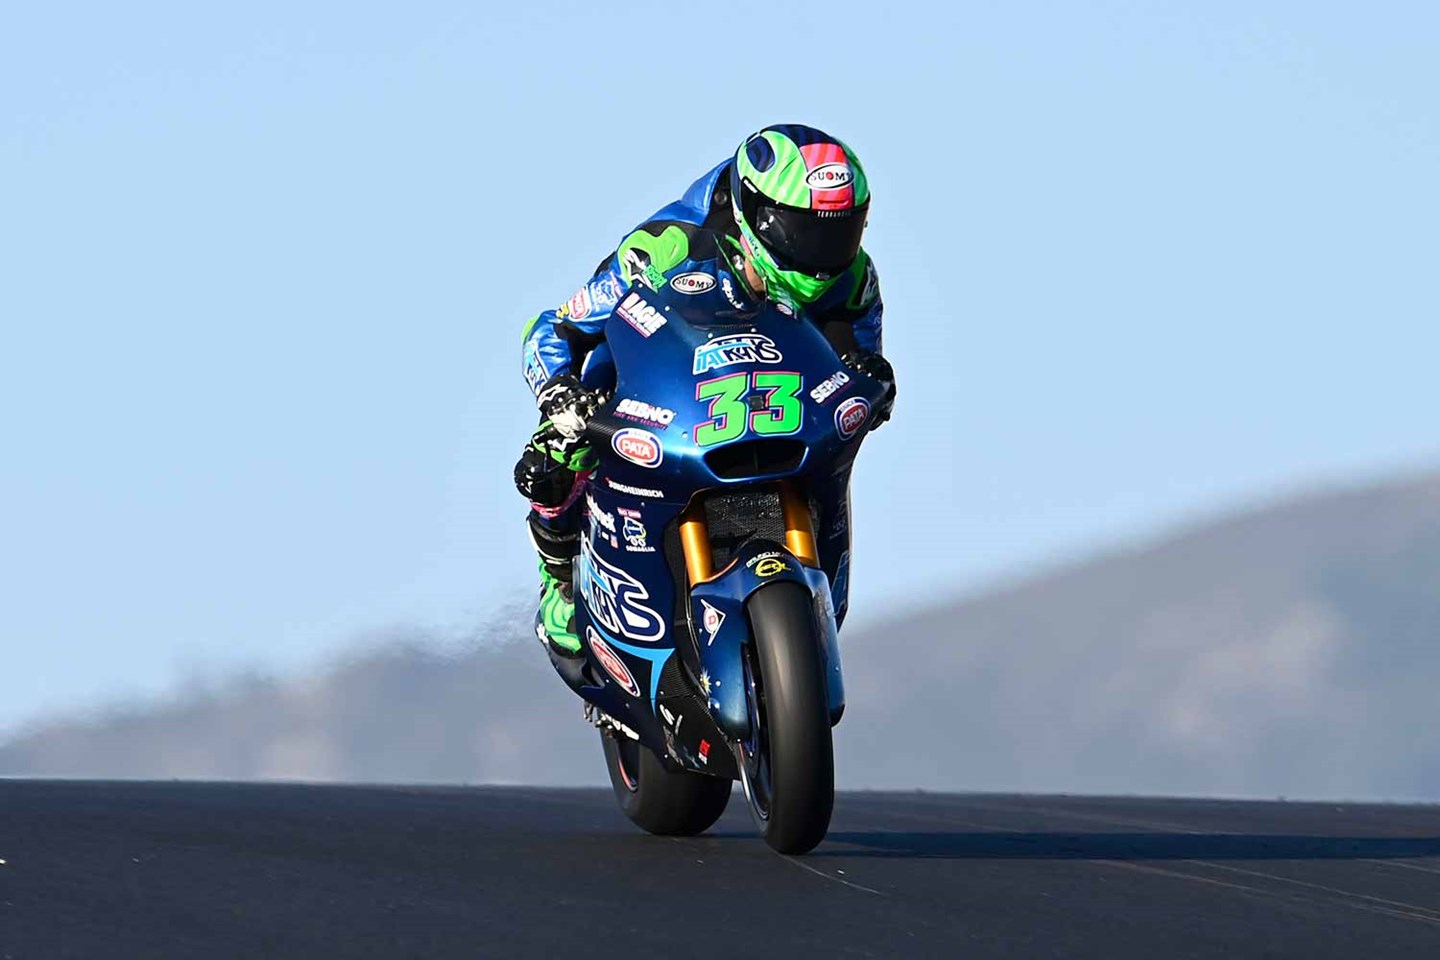 MotoGP, 2020, Portimão: Miguel Oliveira, auto-análise de uma corrida  perfeita - MotoSport